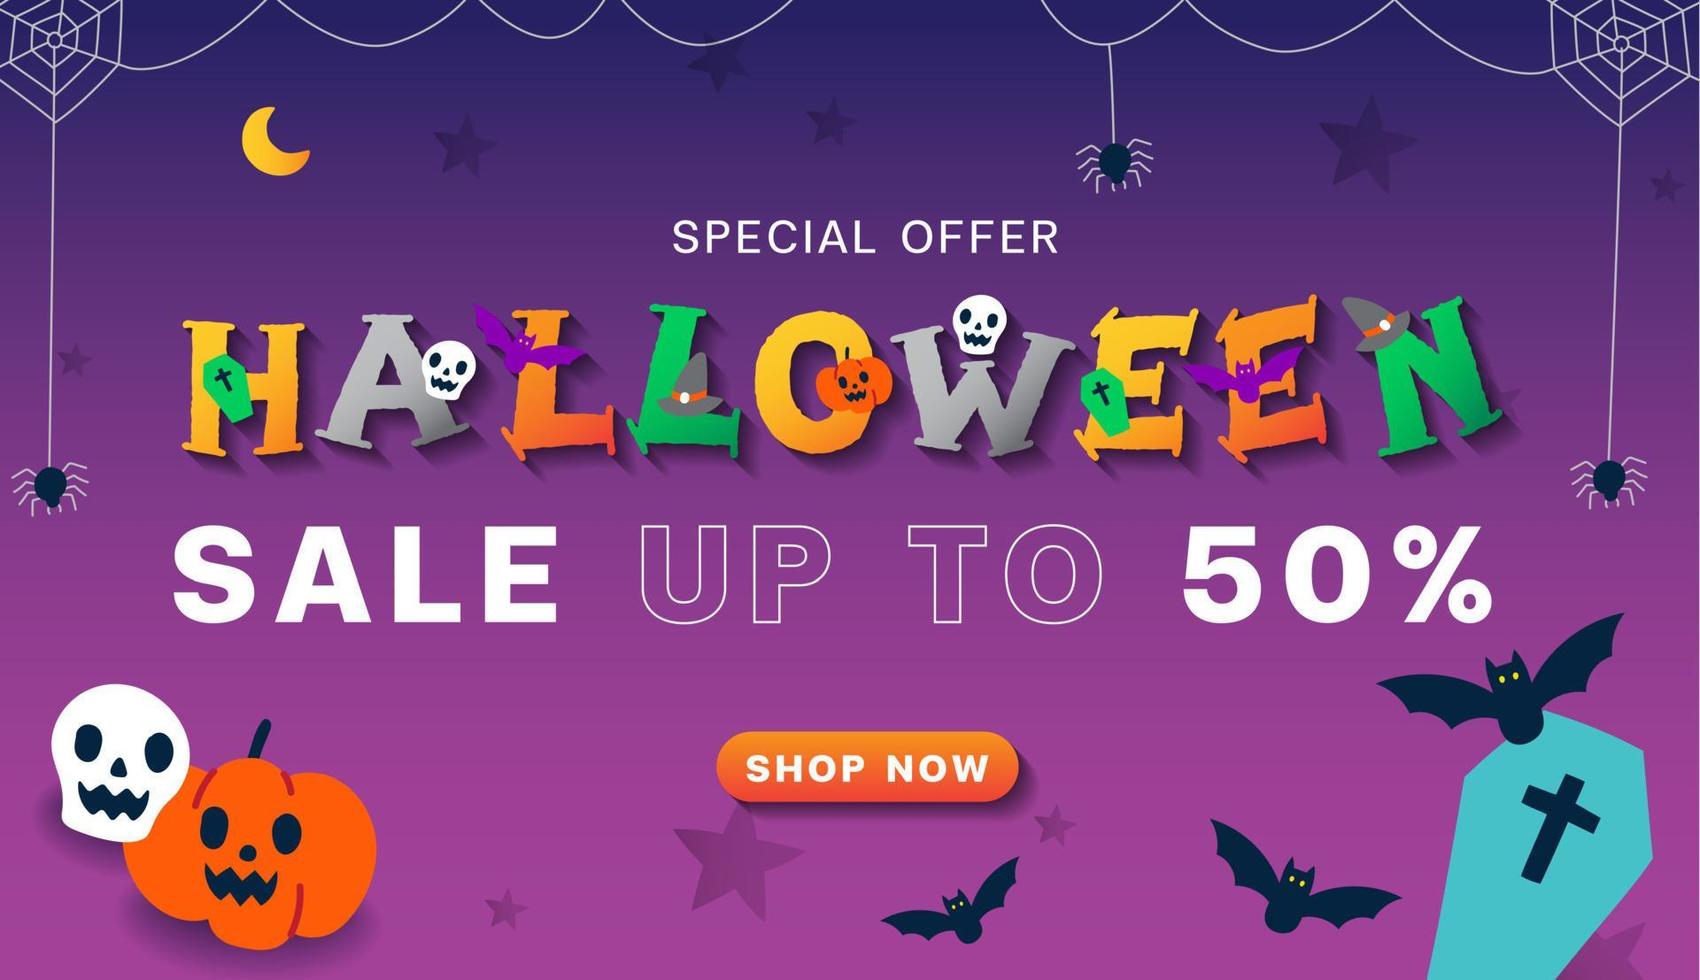 lindo publicidad halloween dibujos animados marketing en línea promoción venta hasta 50 rectángulo web banner invitación tarjeta vector violeta fondo cráneo, calabaza, murciélago, telaraña comprar ahora botón